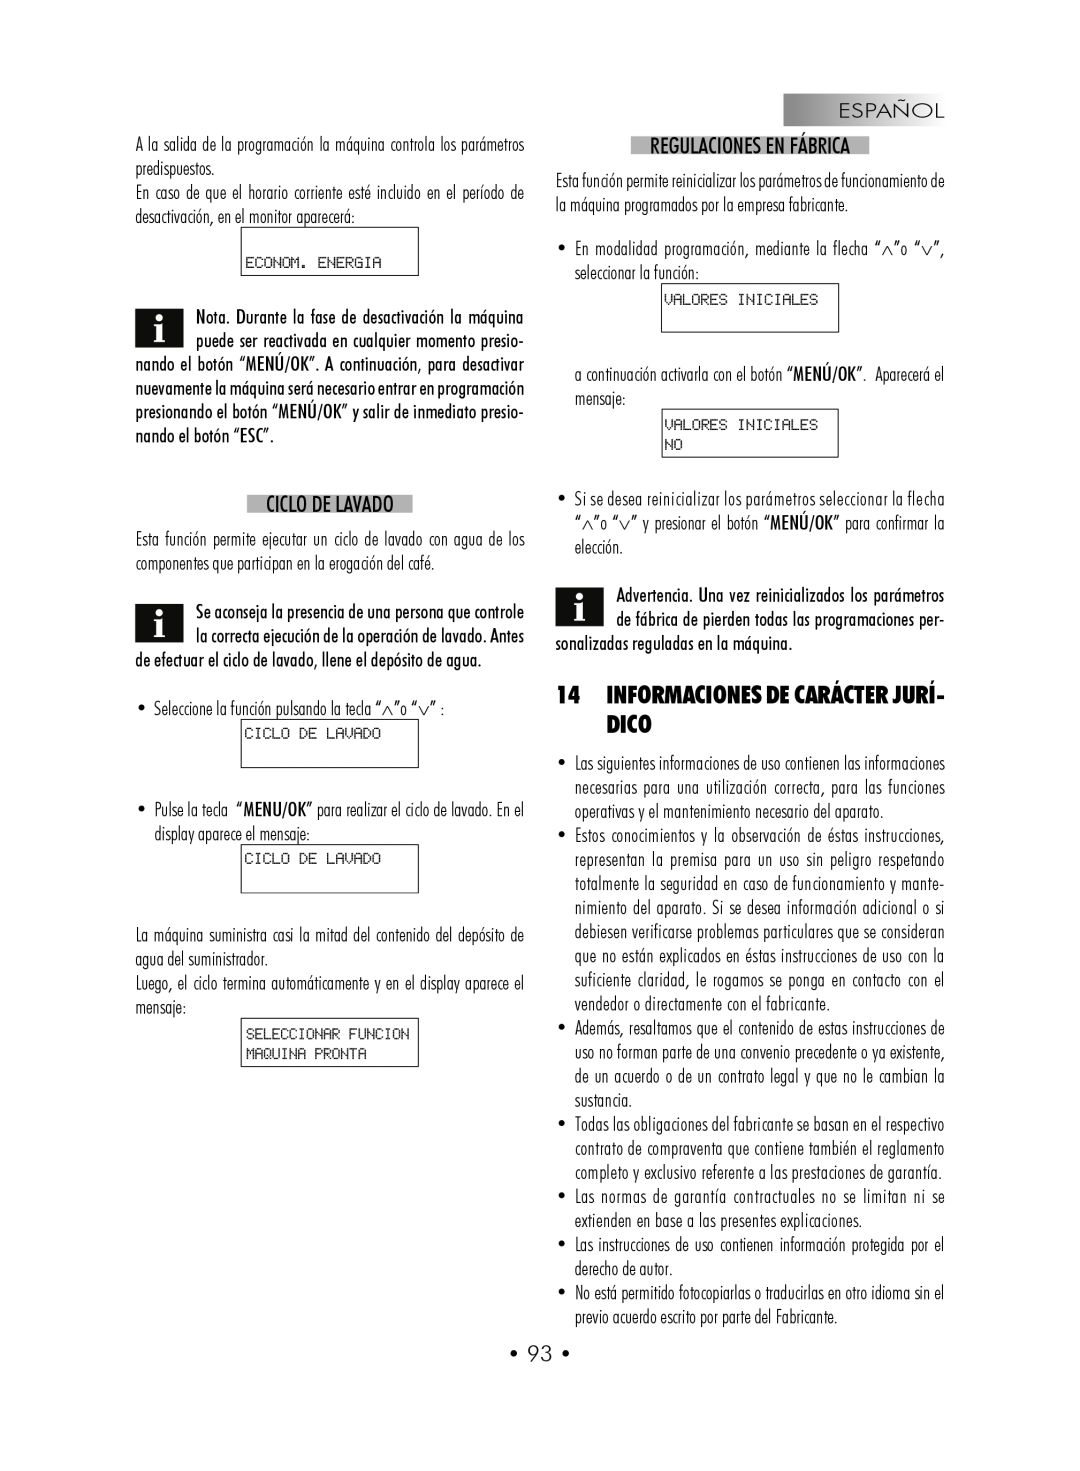 Gaggia SUP027YDR manual 14INFORMACIONES DE CARÁCTER JURÍ- DICO, Ciclo De Lavado, Regulaciones En Fábrica, • 93 • 